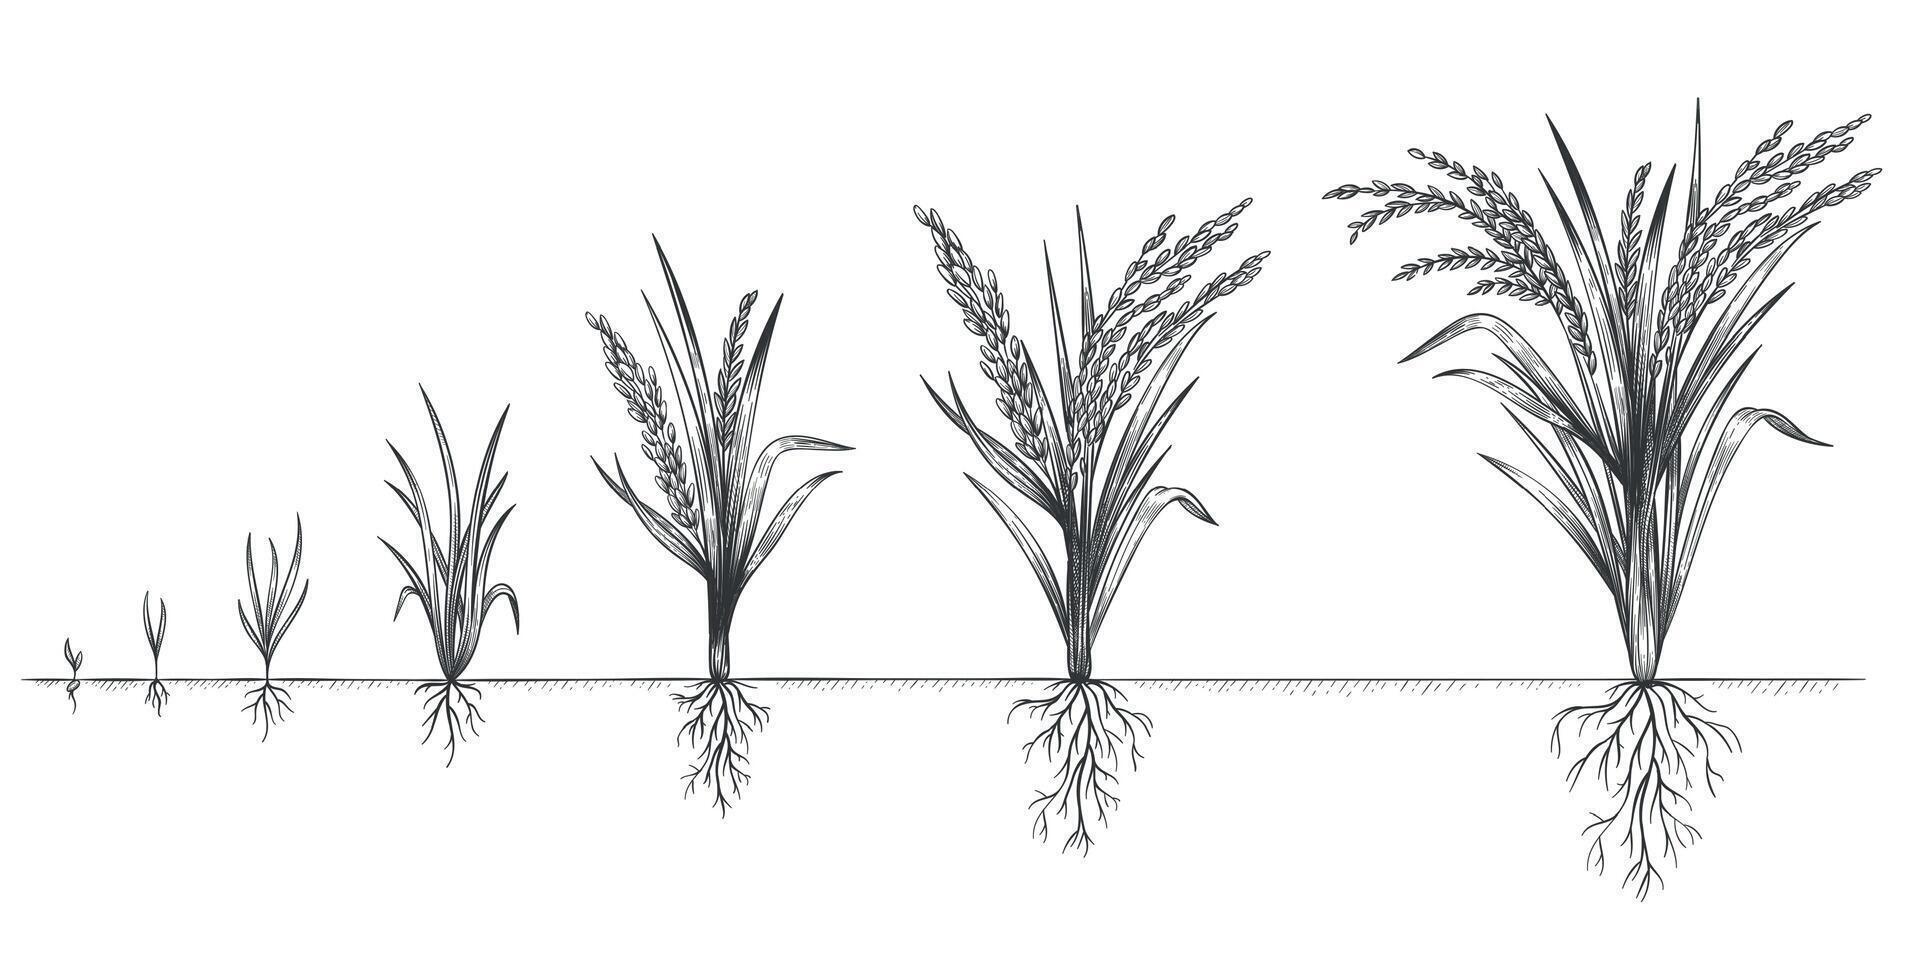 arroz crecimiento. planta cosecha creciente ciclo. bosquejo vida etapas de granja cereal. mano dibujado espiguillas en suelo. granos incrementar pasos vector concepto